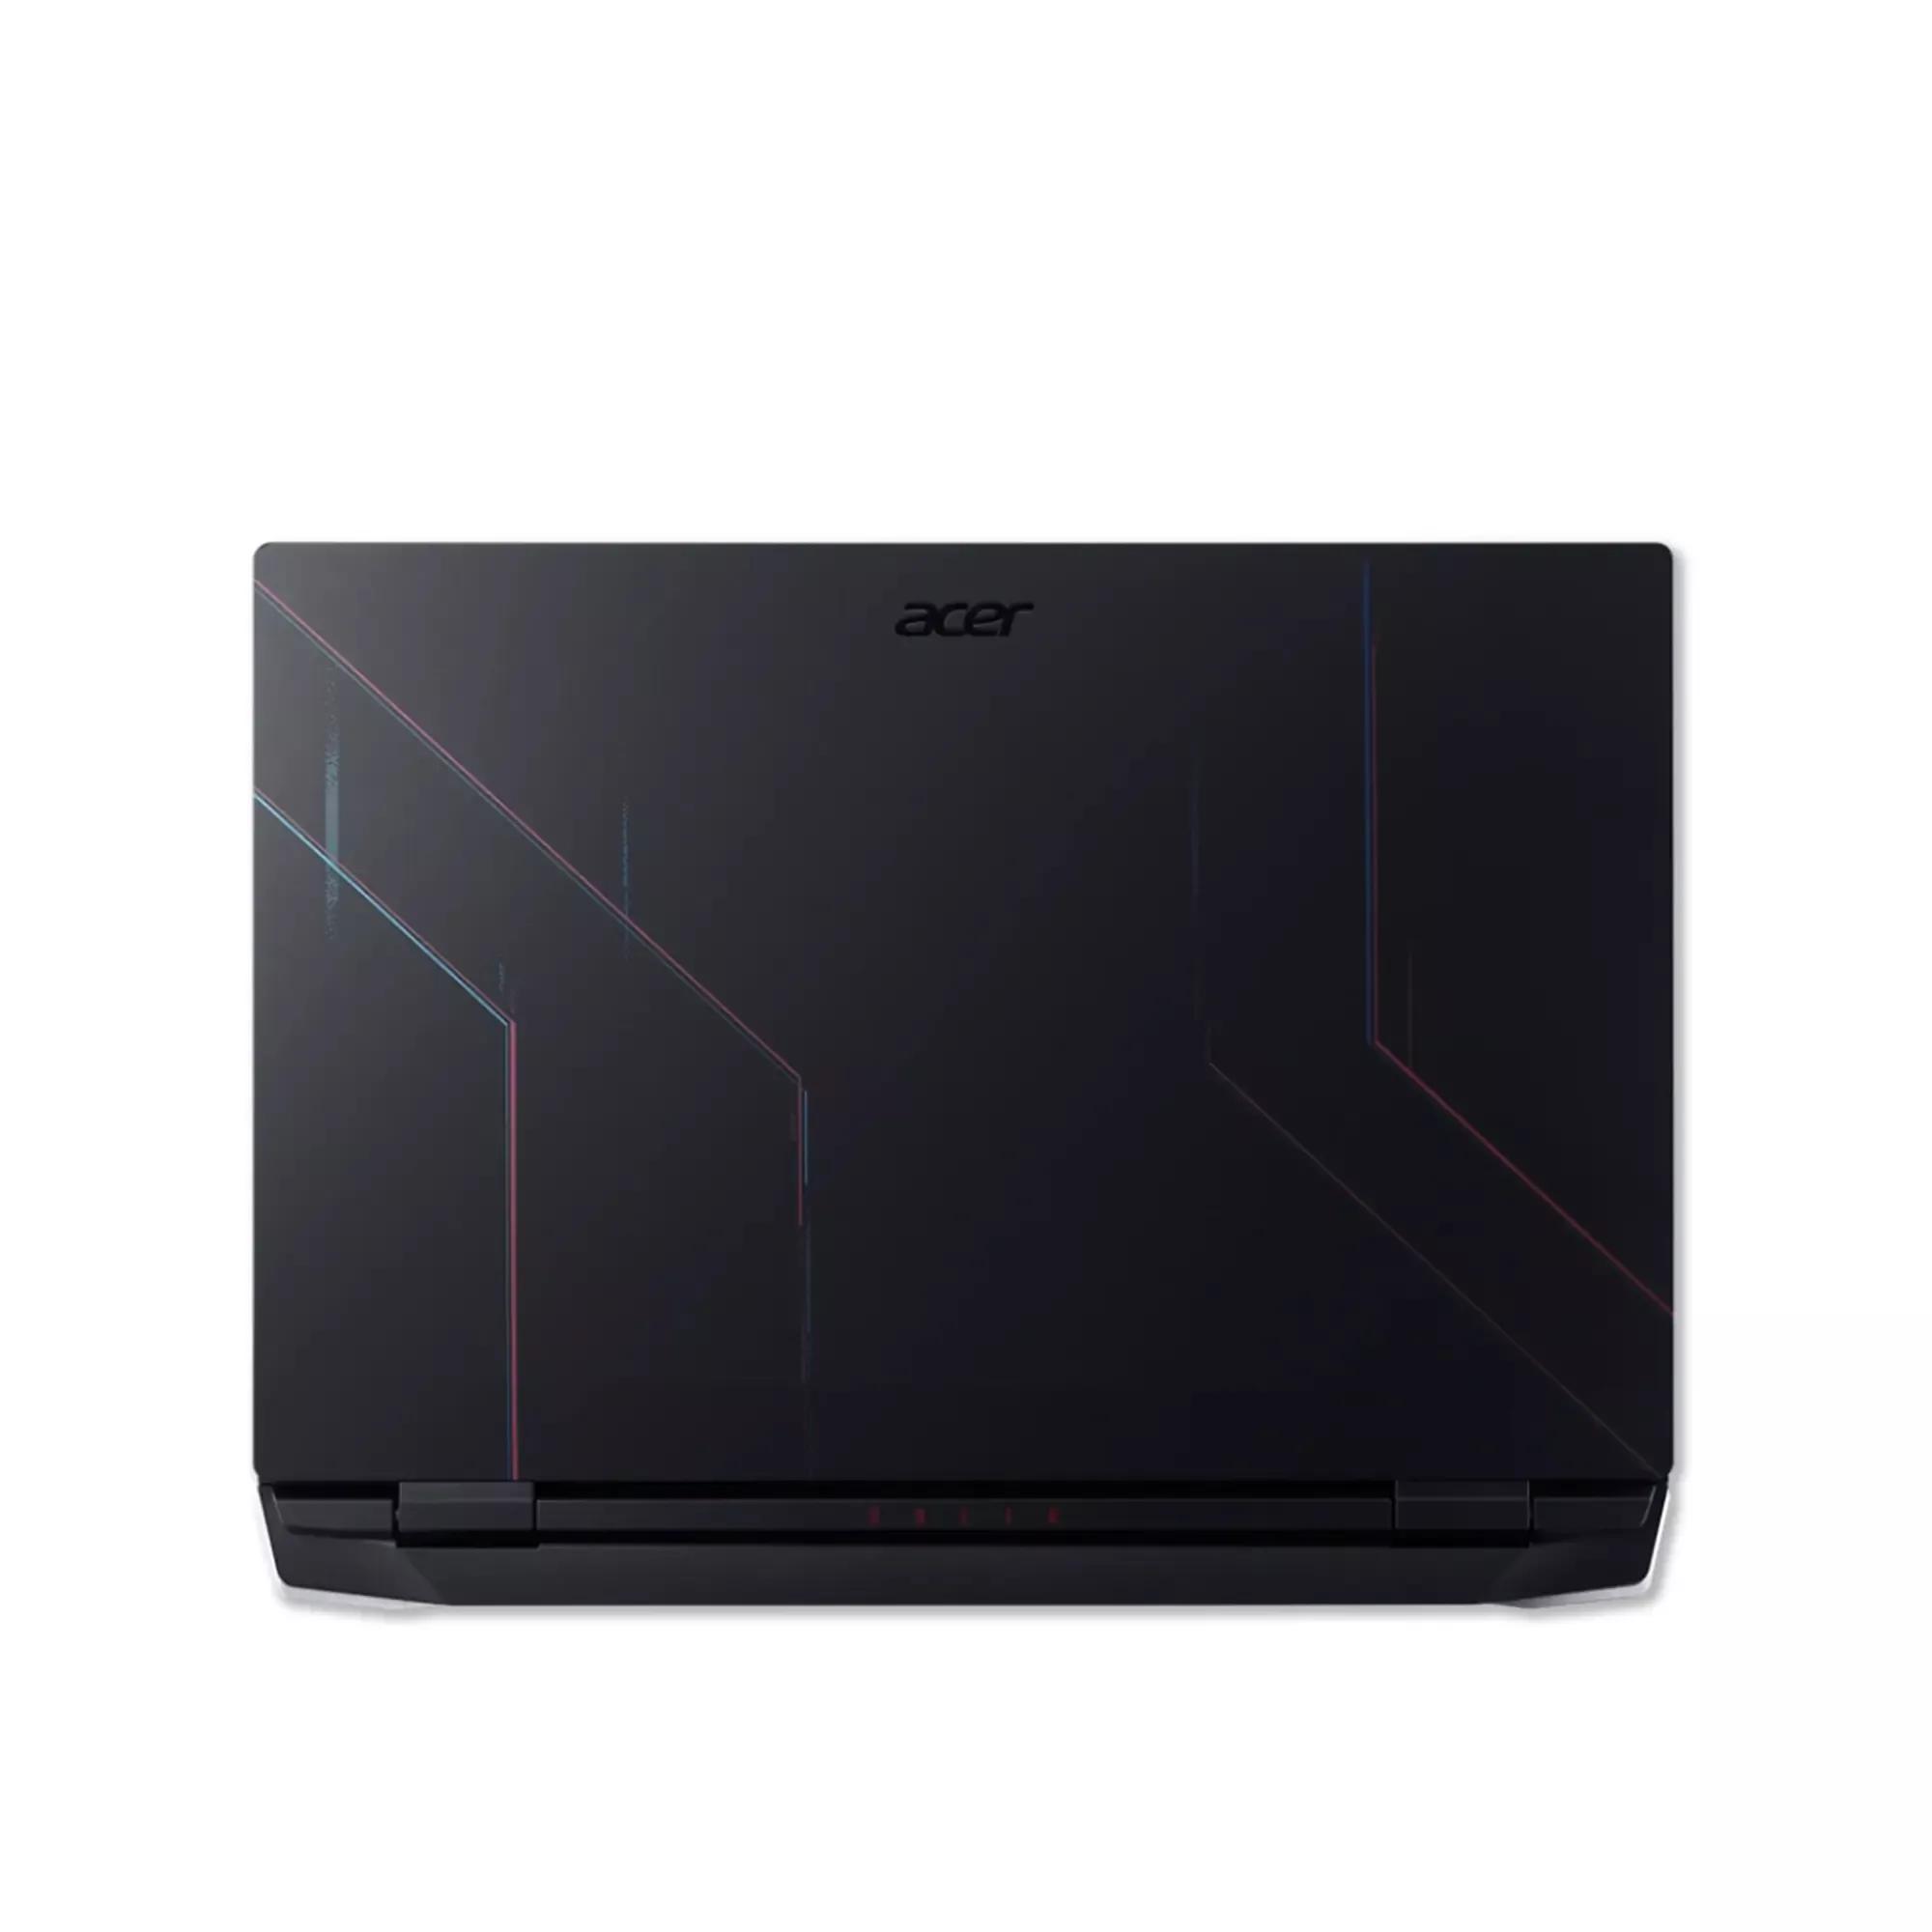 Acer Nitro 5 2022 i7 12700H / RTX 3060 / 16GB RAM / 512GB SSD / 15.6" FHD 144Hz display / backlight Keyboard